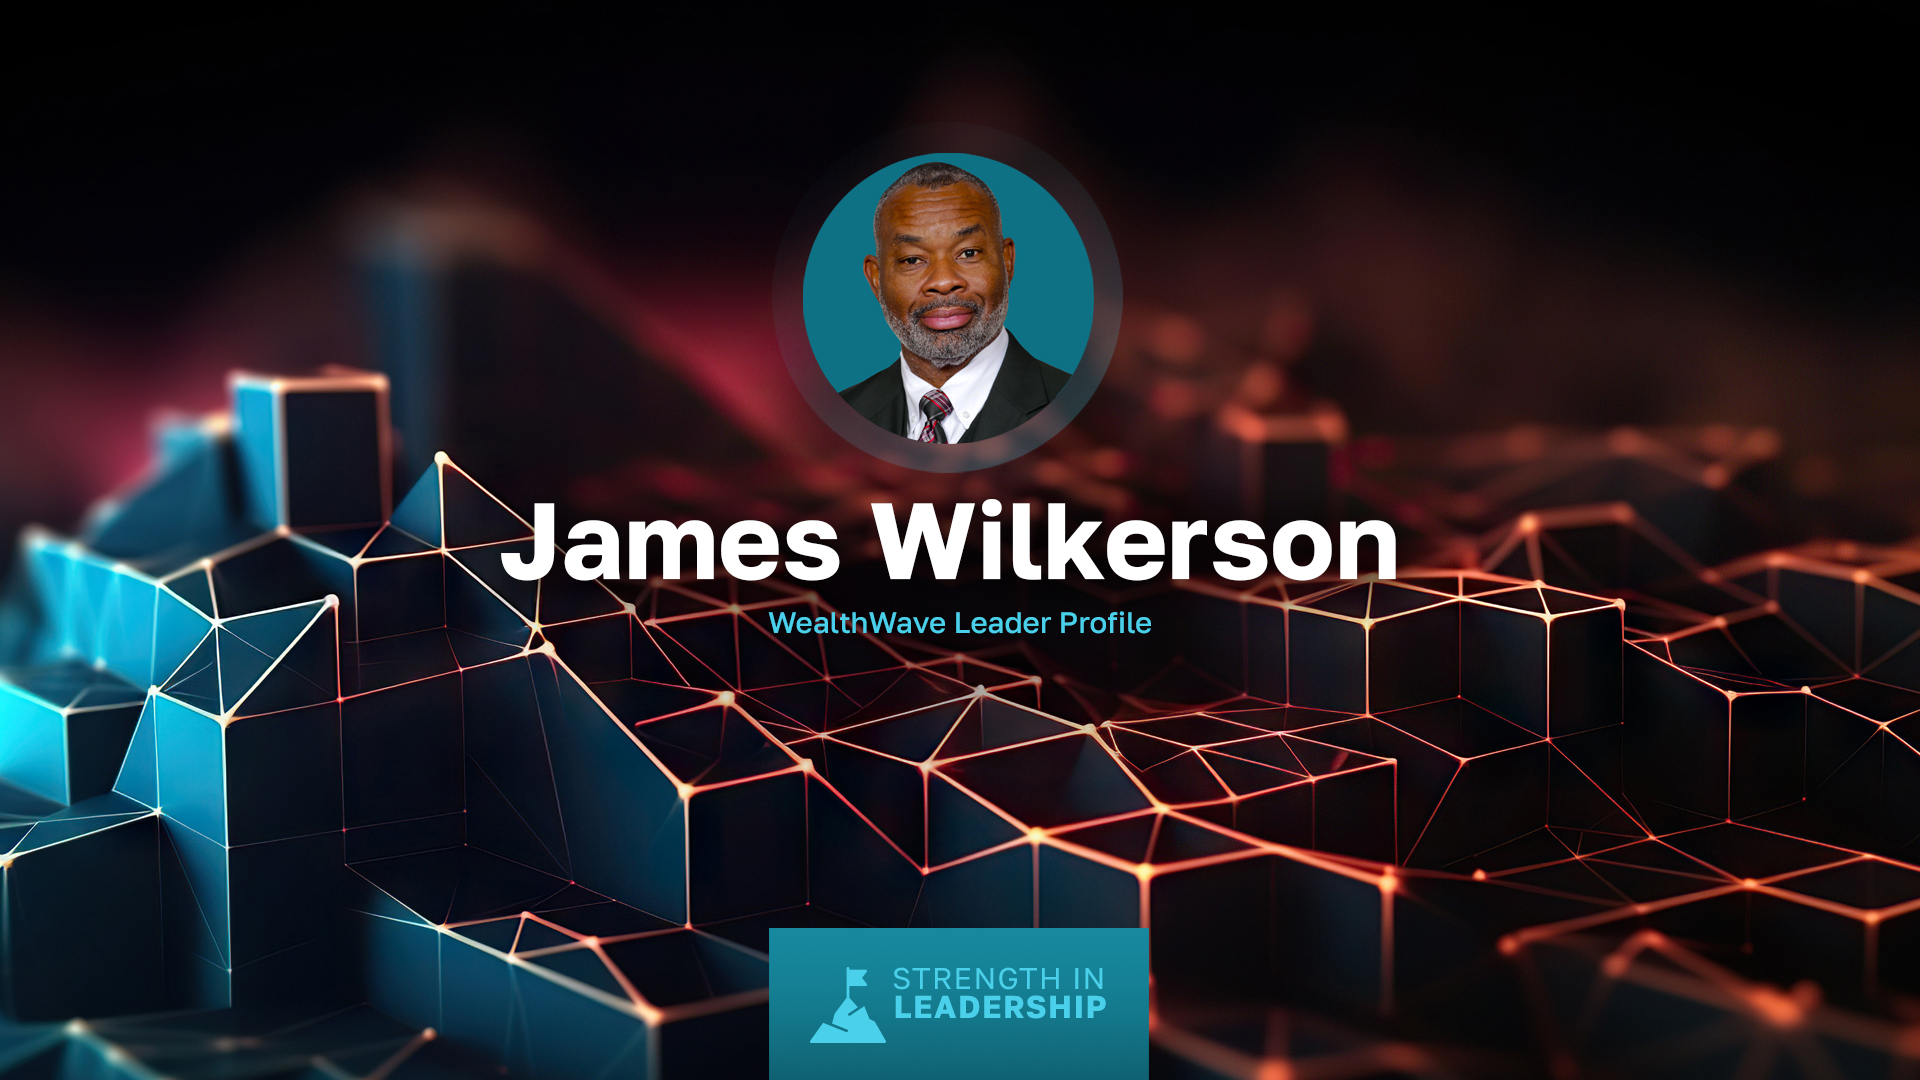 Perfil del líder: James Wilkerson - De oficial naval a líder del sector financiero